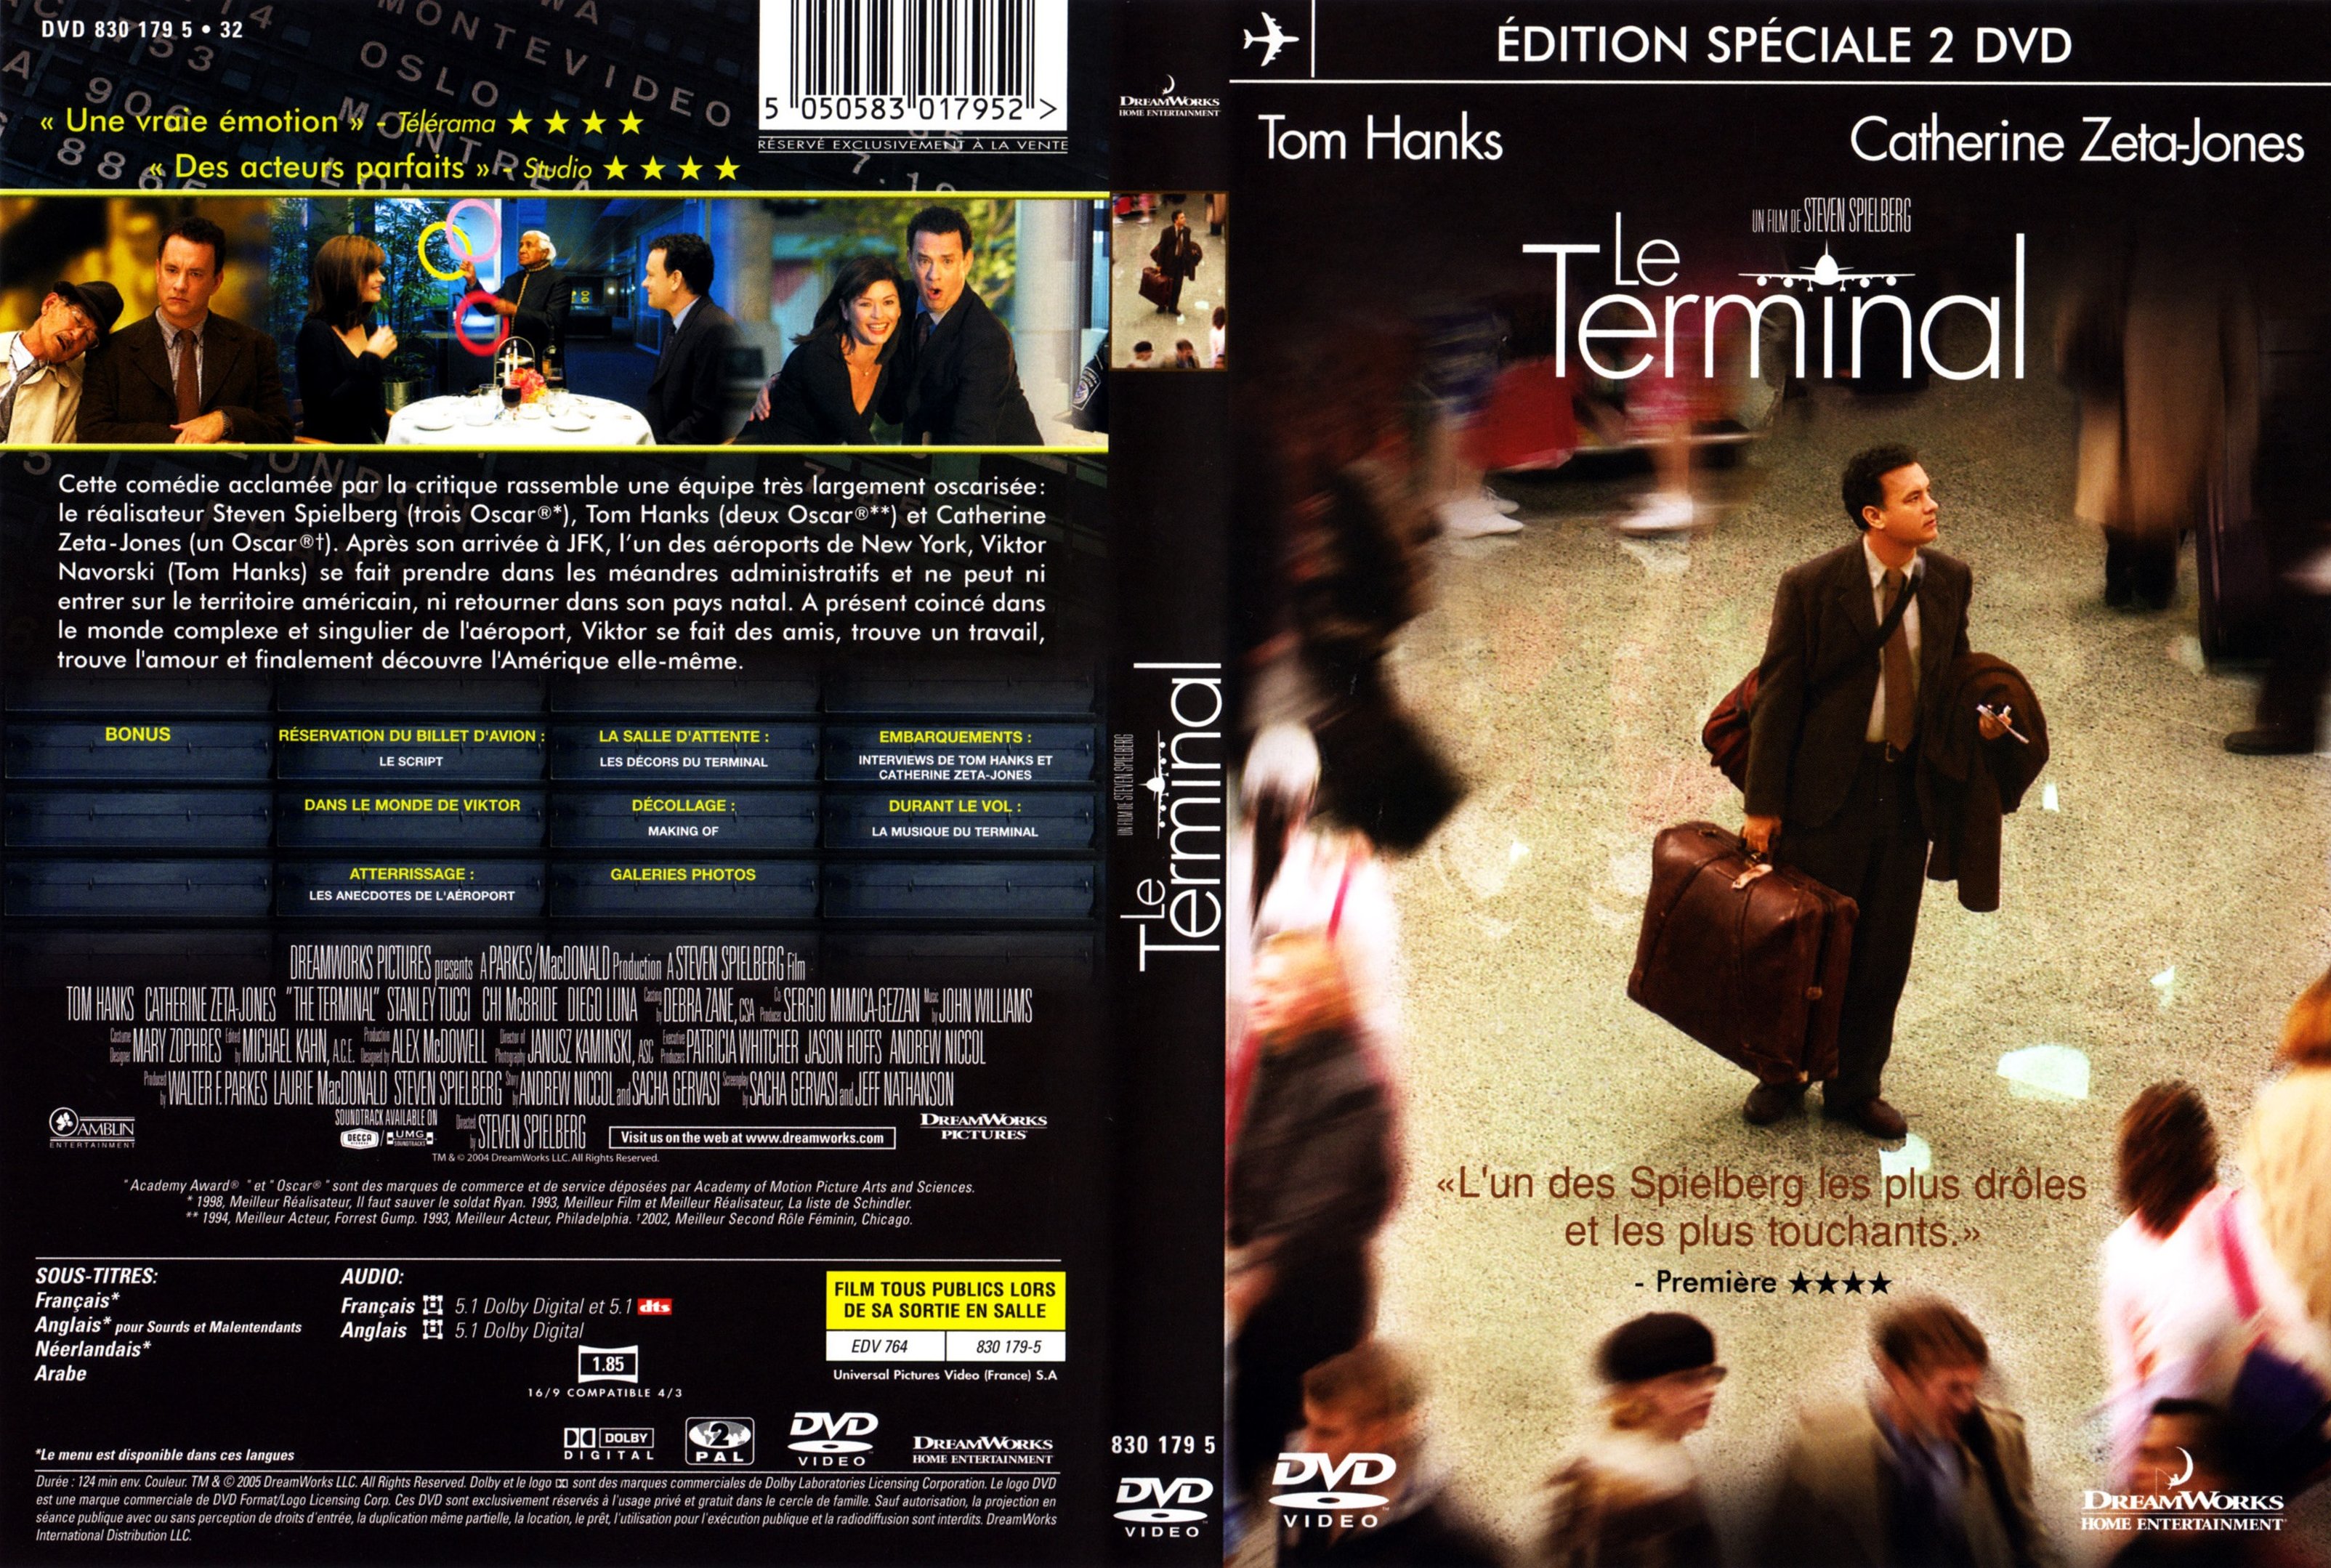 Jaquette DVD Le terminal